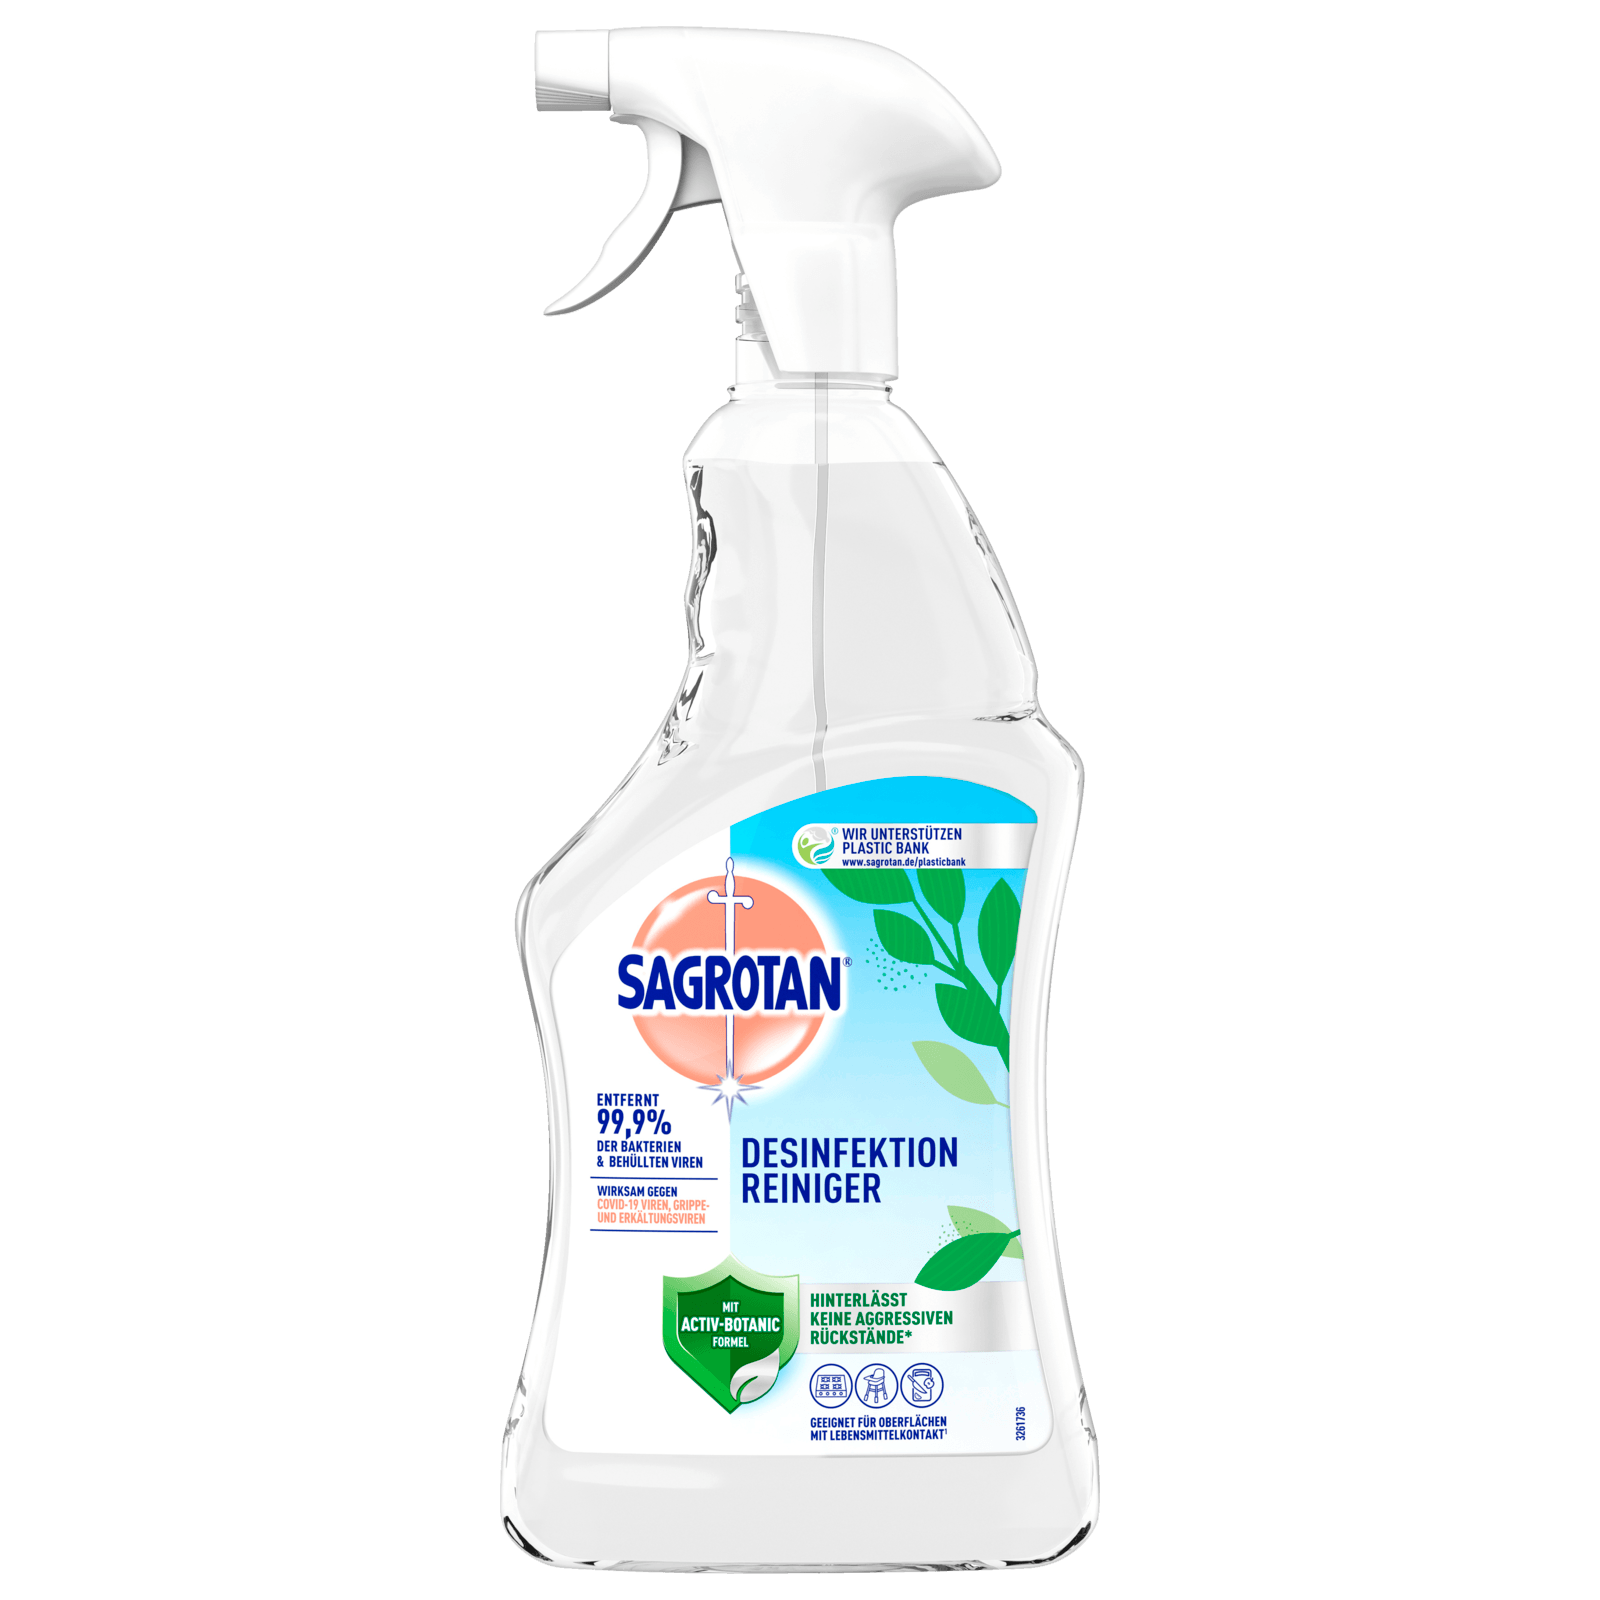 Sagrotan Desinfektions-Reiniger 500ml bei REWE online bestellen!